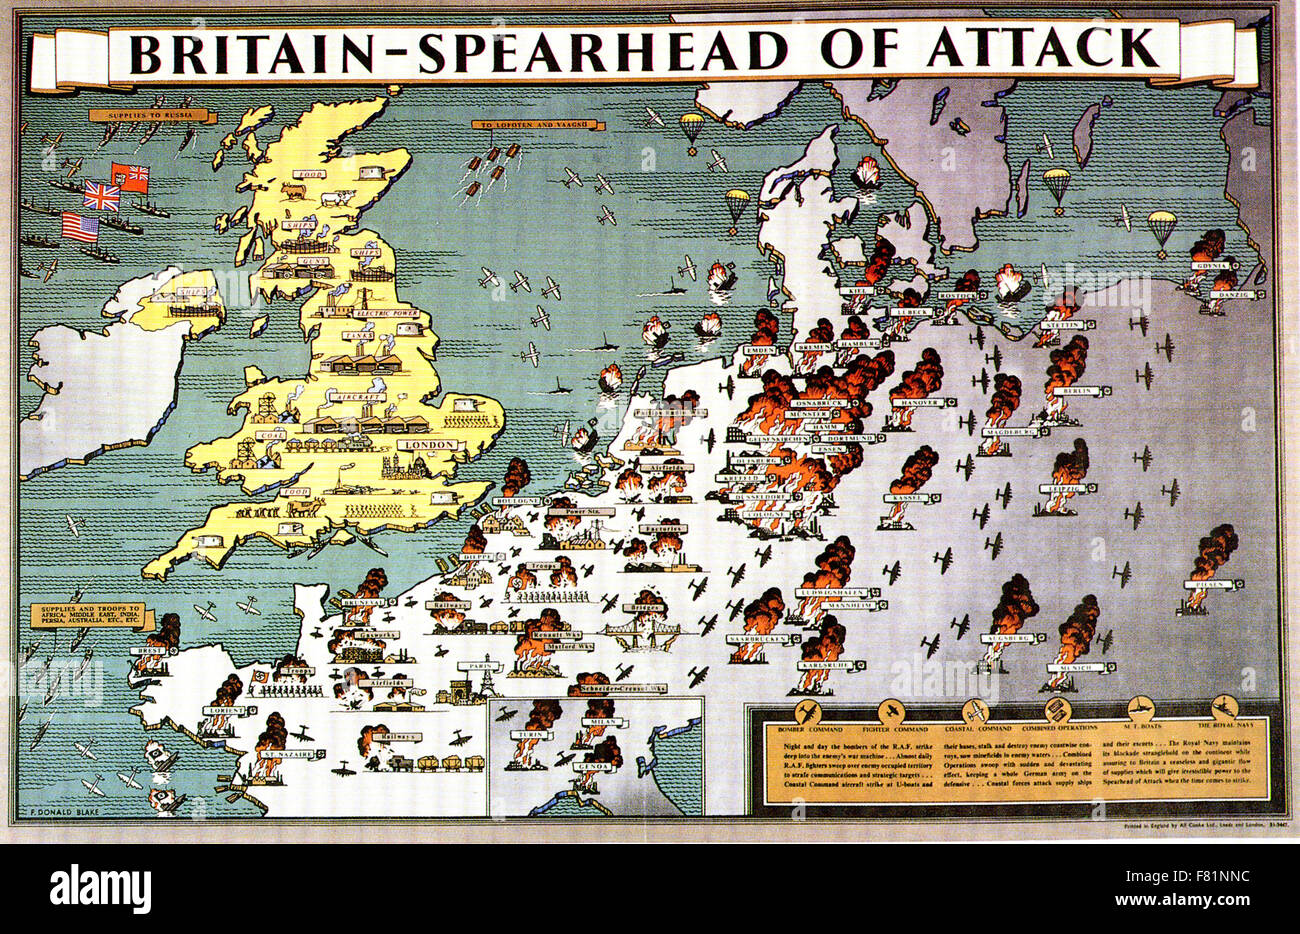 Gran Bretagna - Punta di diamante dell attacco poster britannico pubblicato nel 1943 mostra un occupato i paesi industrializzati Bretagna a sostegno della campagna di bombardamenti Foto Stock